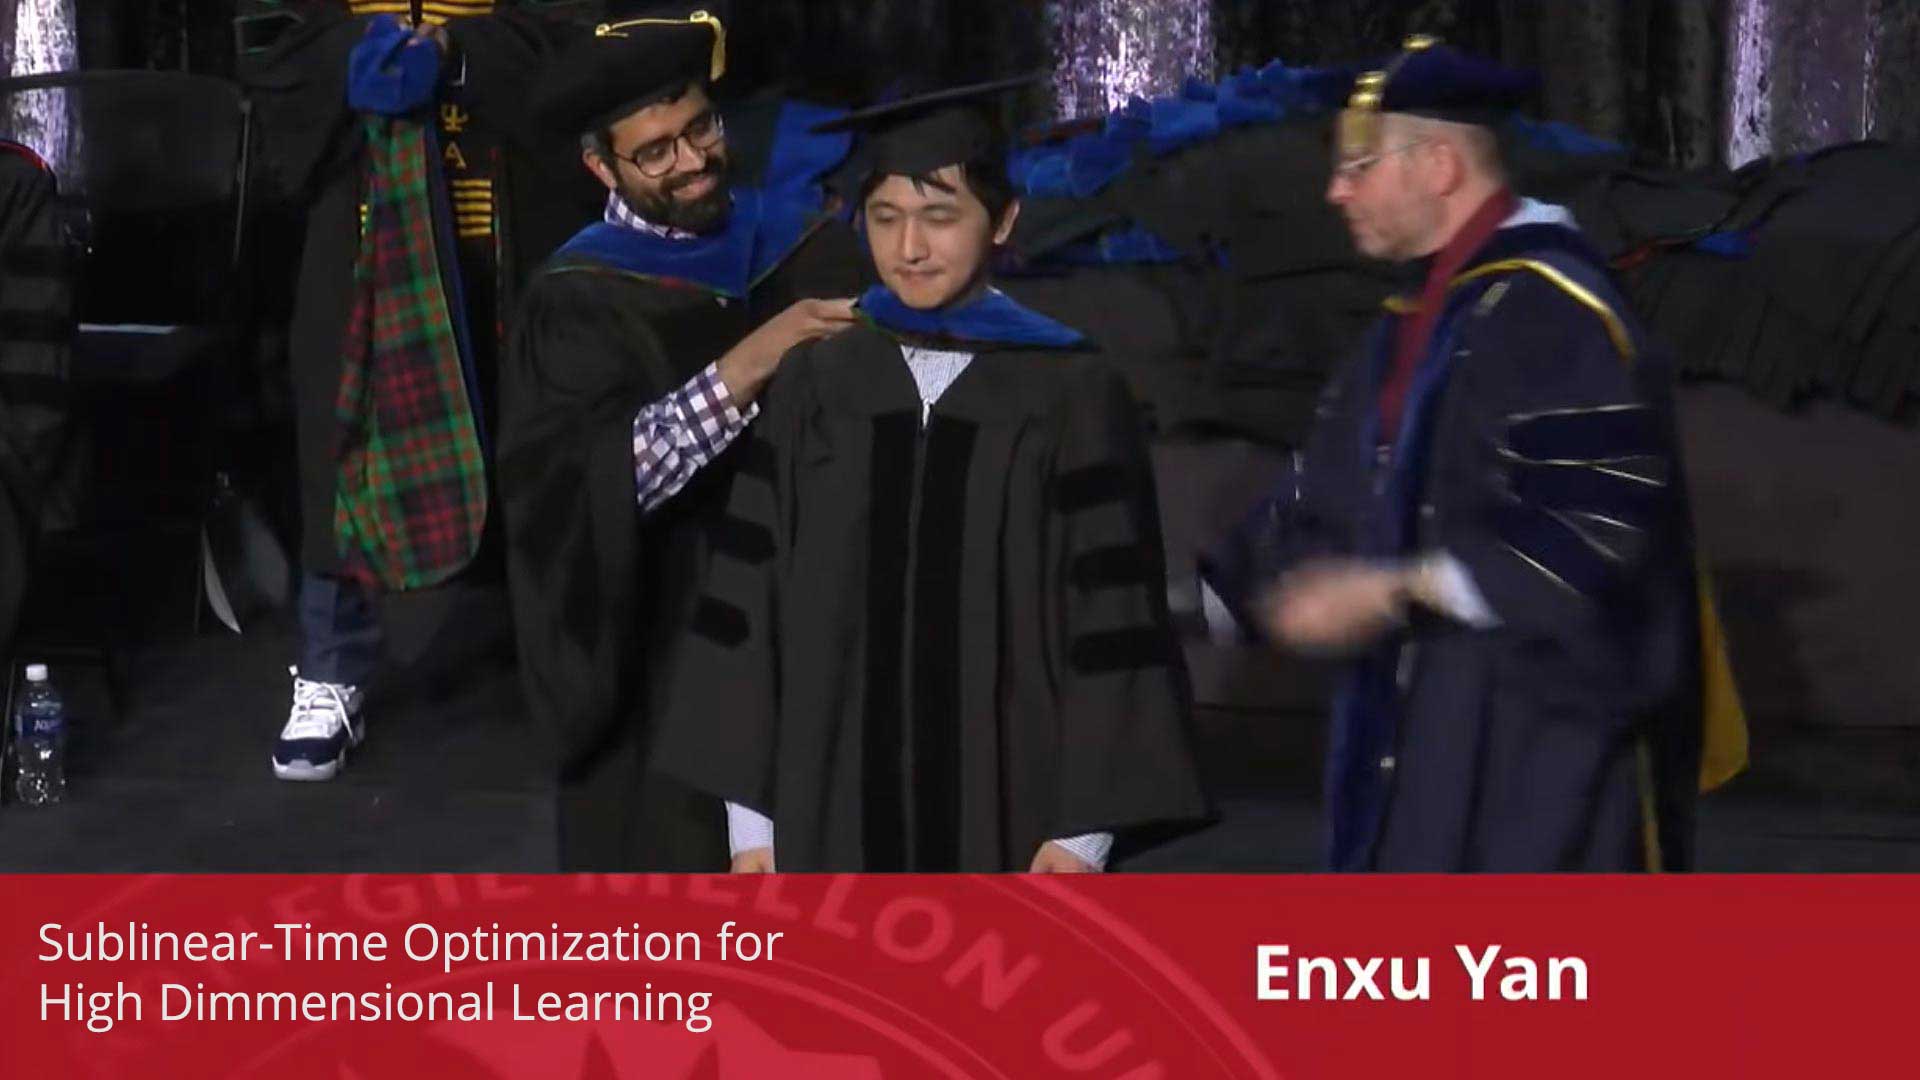 Enxu Yan (Ian En-Hsu Yen) - Machine Learning PhD Graduate 2018